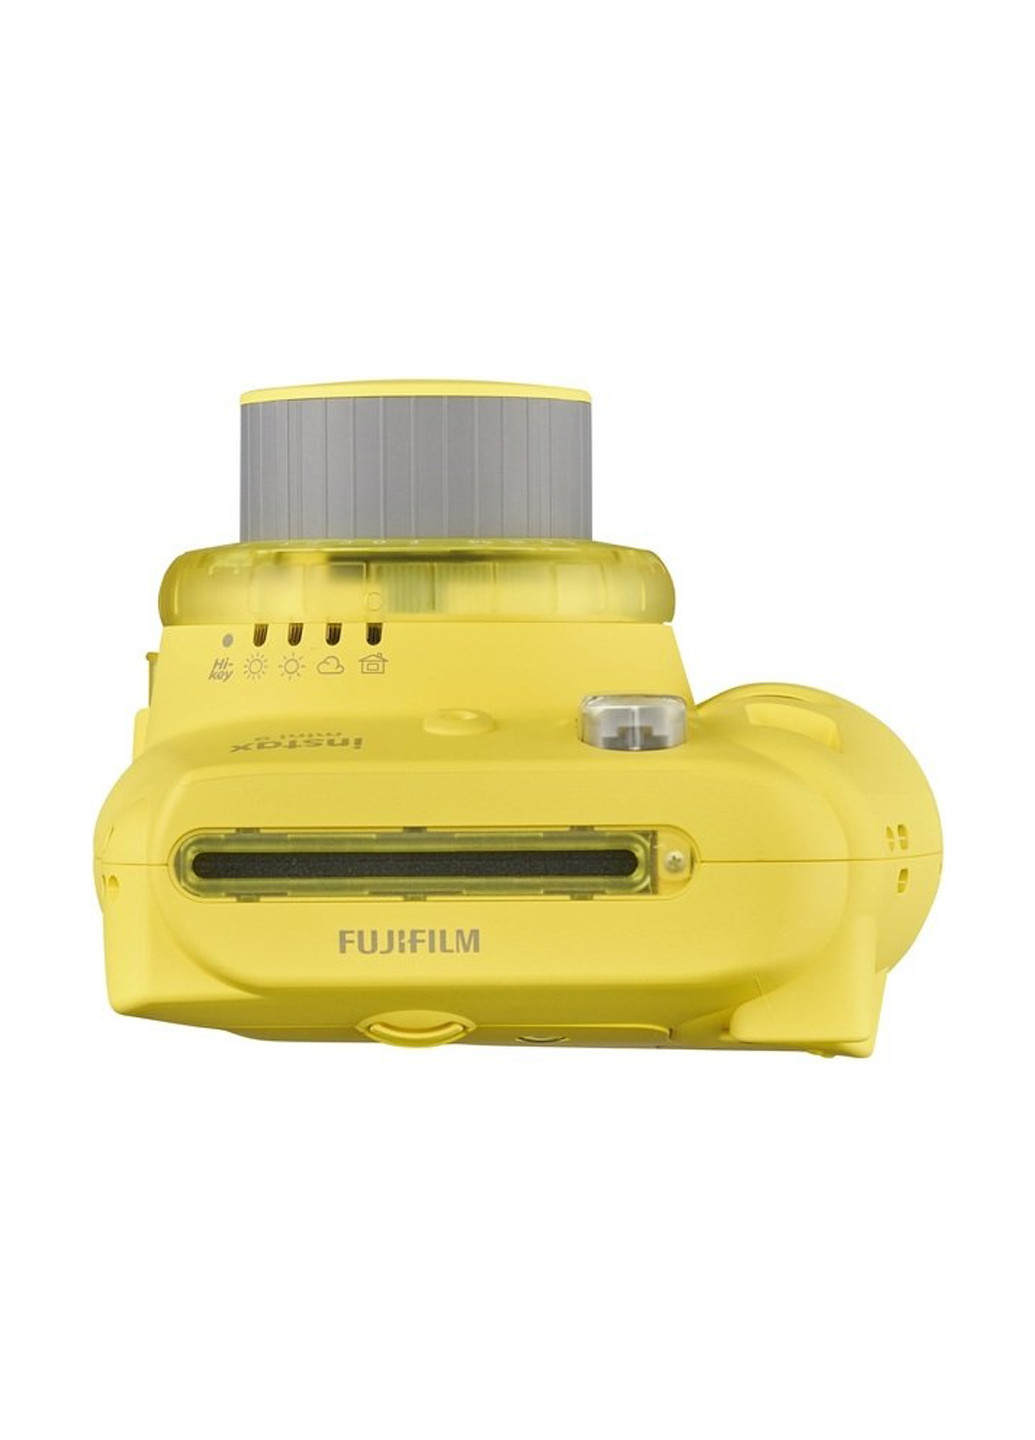 Фотокамера моментальной печати INSTAX Mini 9 Yellow Fujifilm моментальной печати instax mini 9 yellow (151241178)